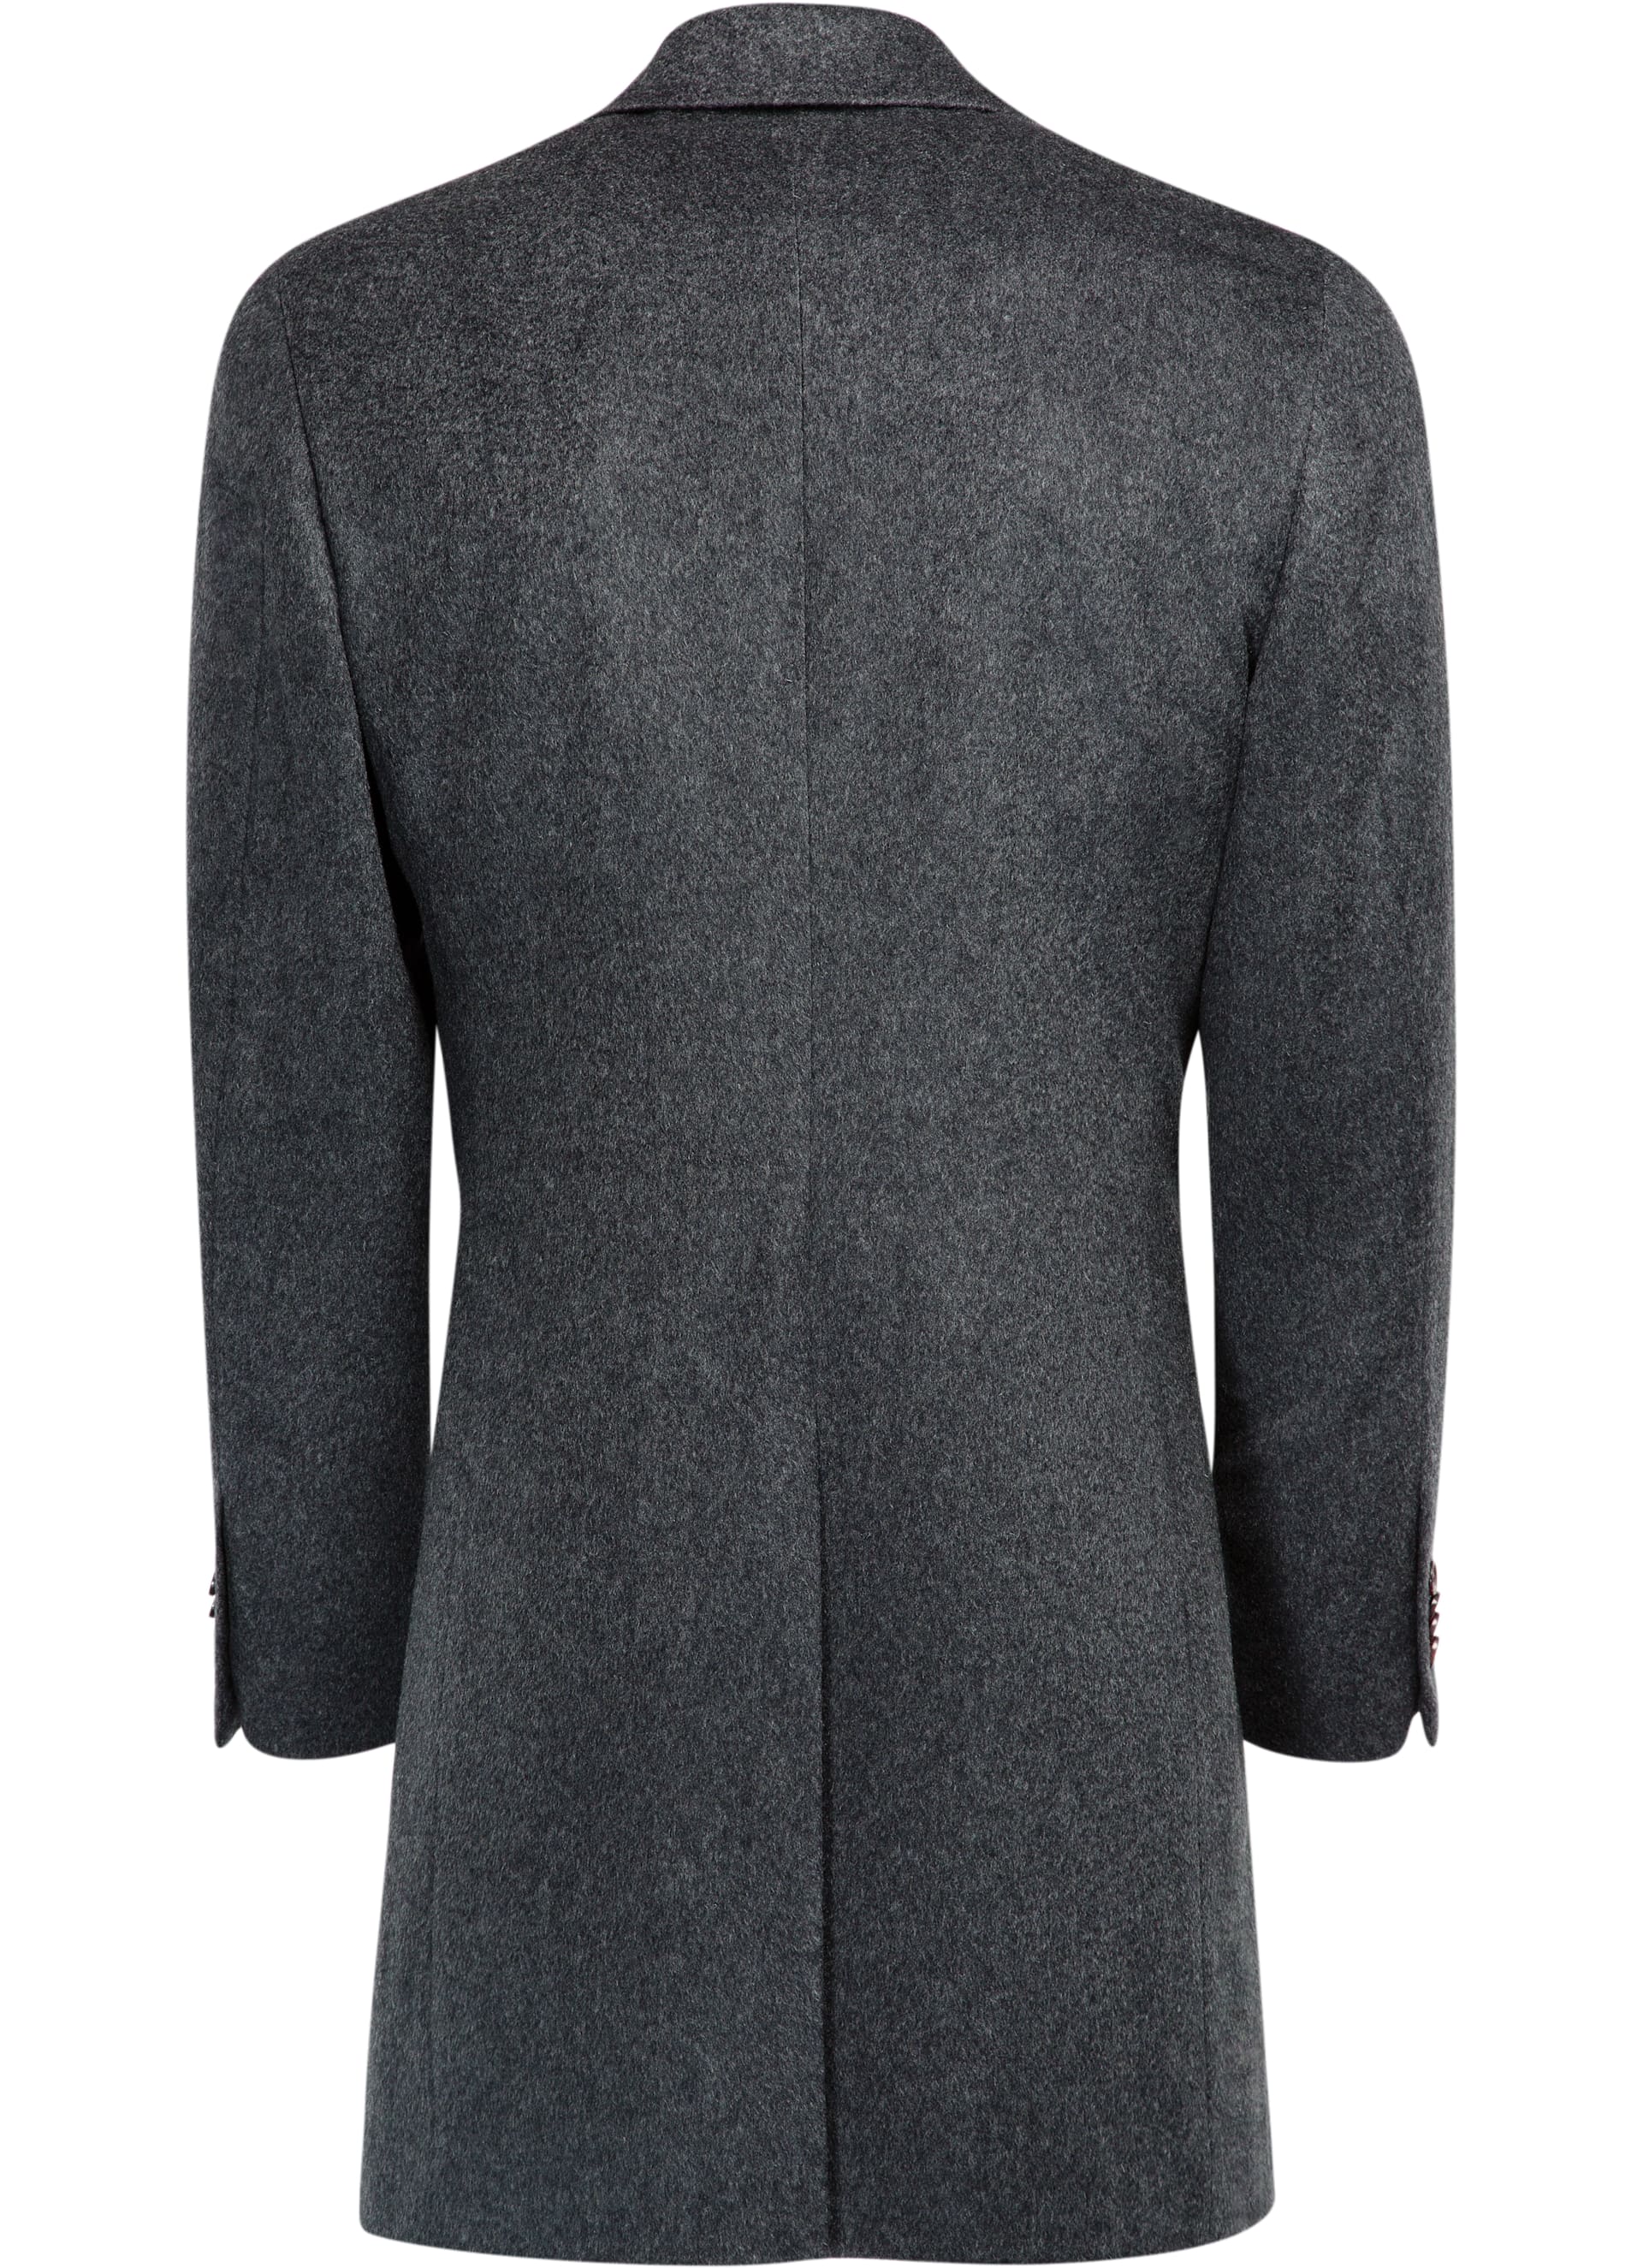 Dark Grey Overcoat J460i | Suitsupply Online Store